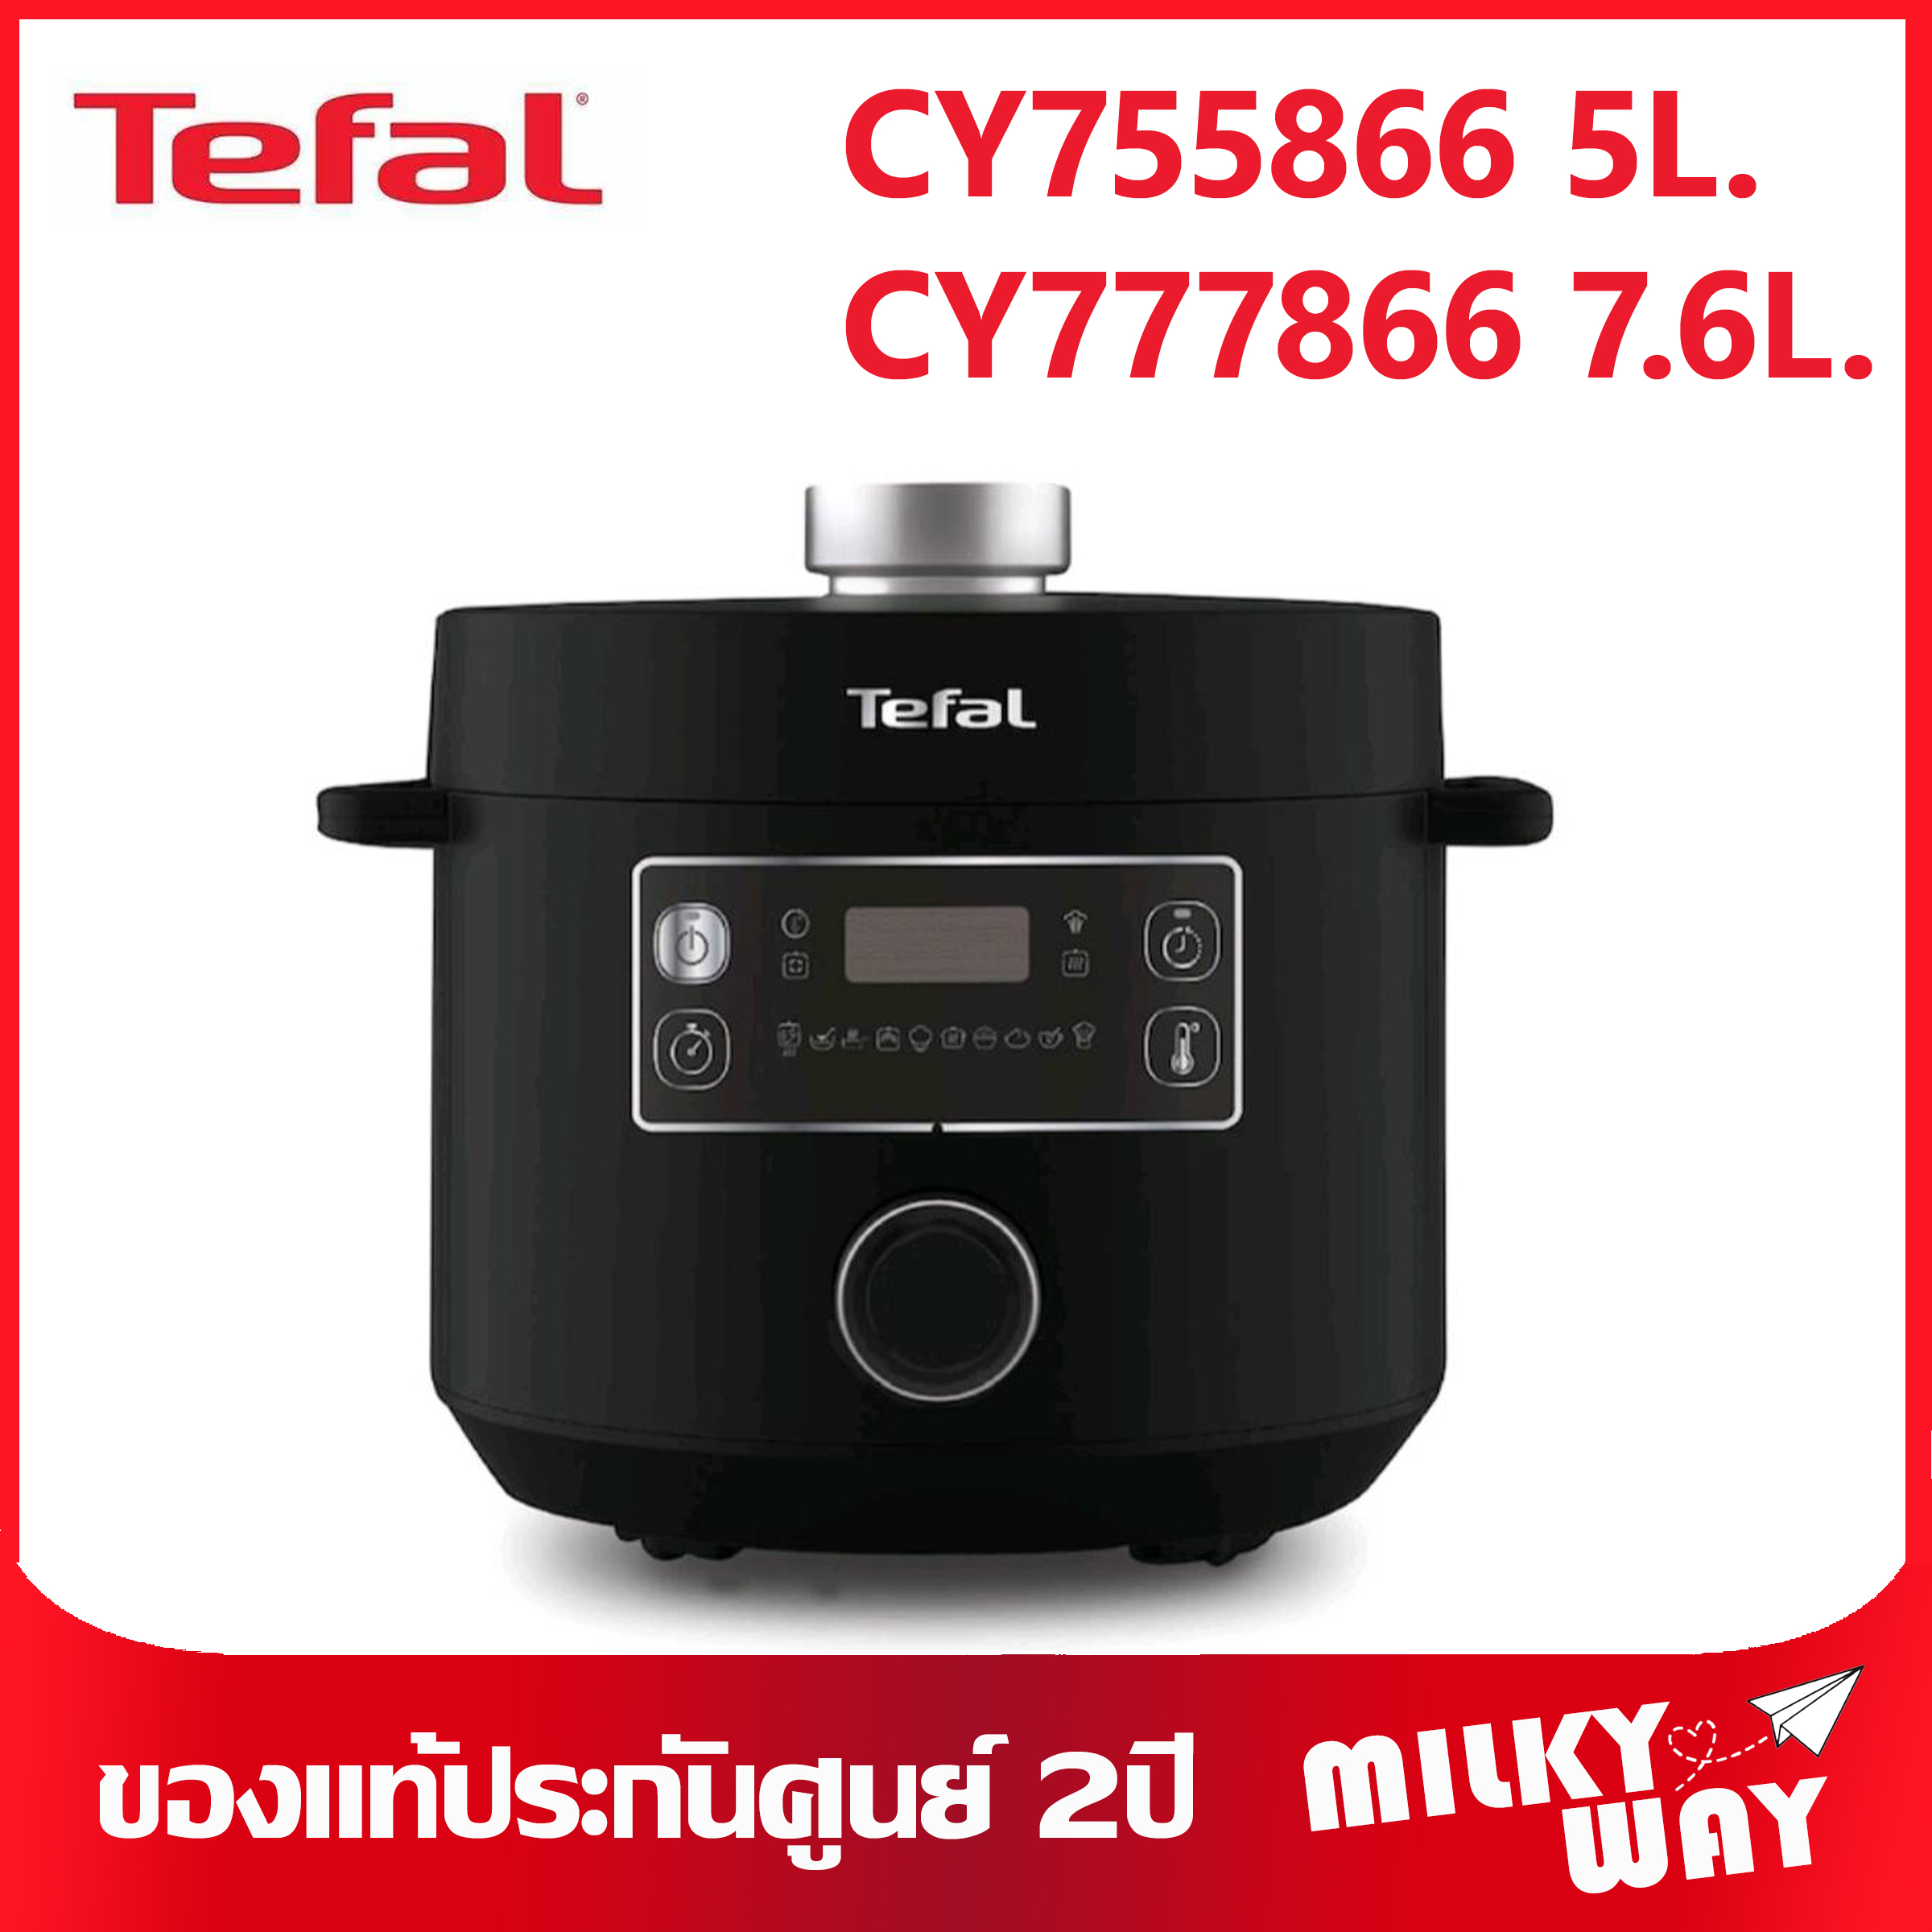 ❗รุ่นใหม่❗หม้ออัดแรงดันไฟฟ้า Tefal Turbo Cuisine รุ่น CY755866 ขนาด 5 ลิตร รุ่น CY777866 ขนาด7.6ลิตร